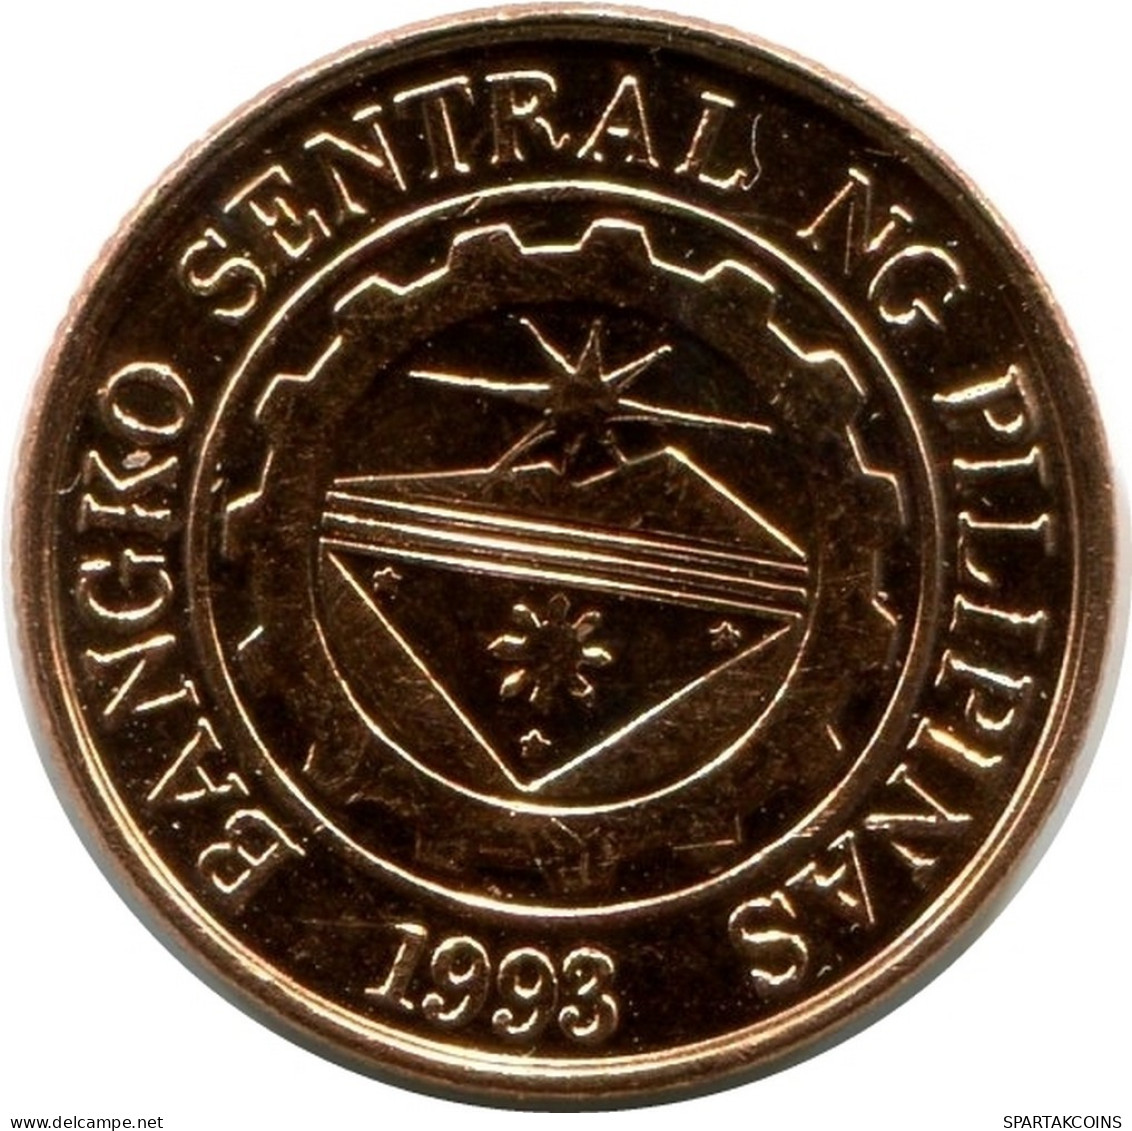 10 CENTIMO 1997 PHILIPPINES UNC Coin #M10116.U.A - Philippinen